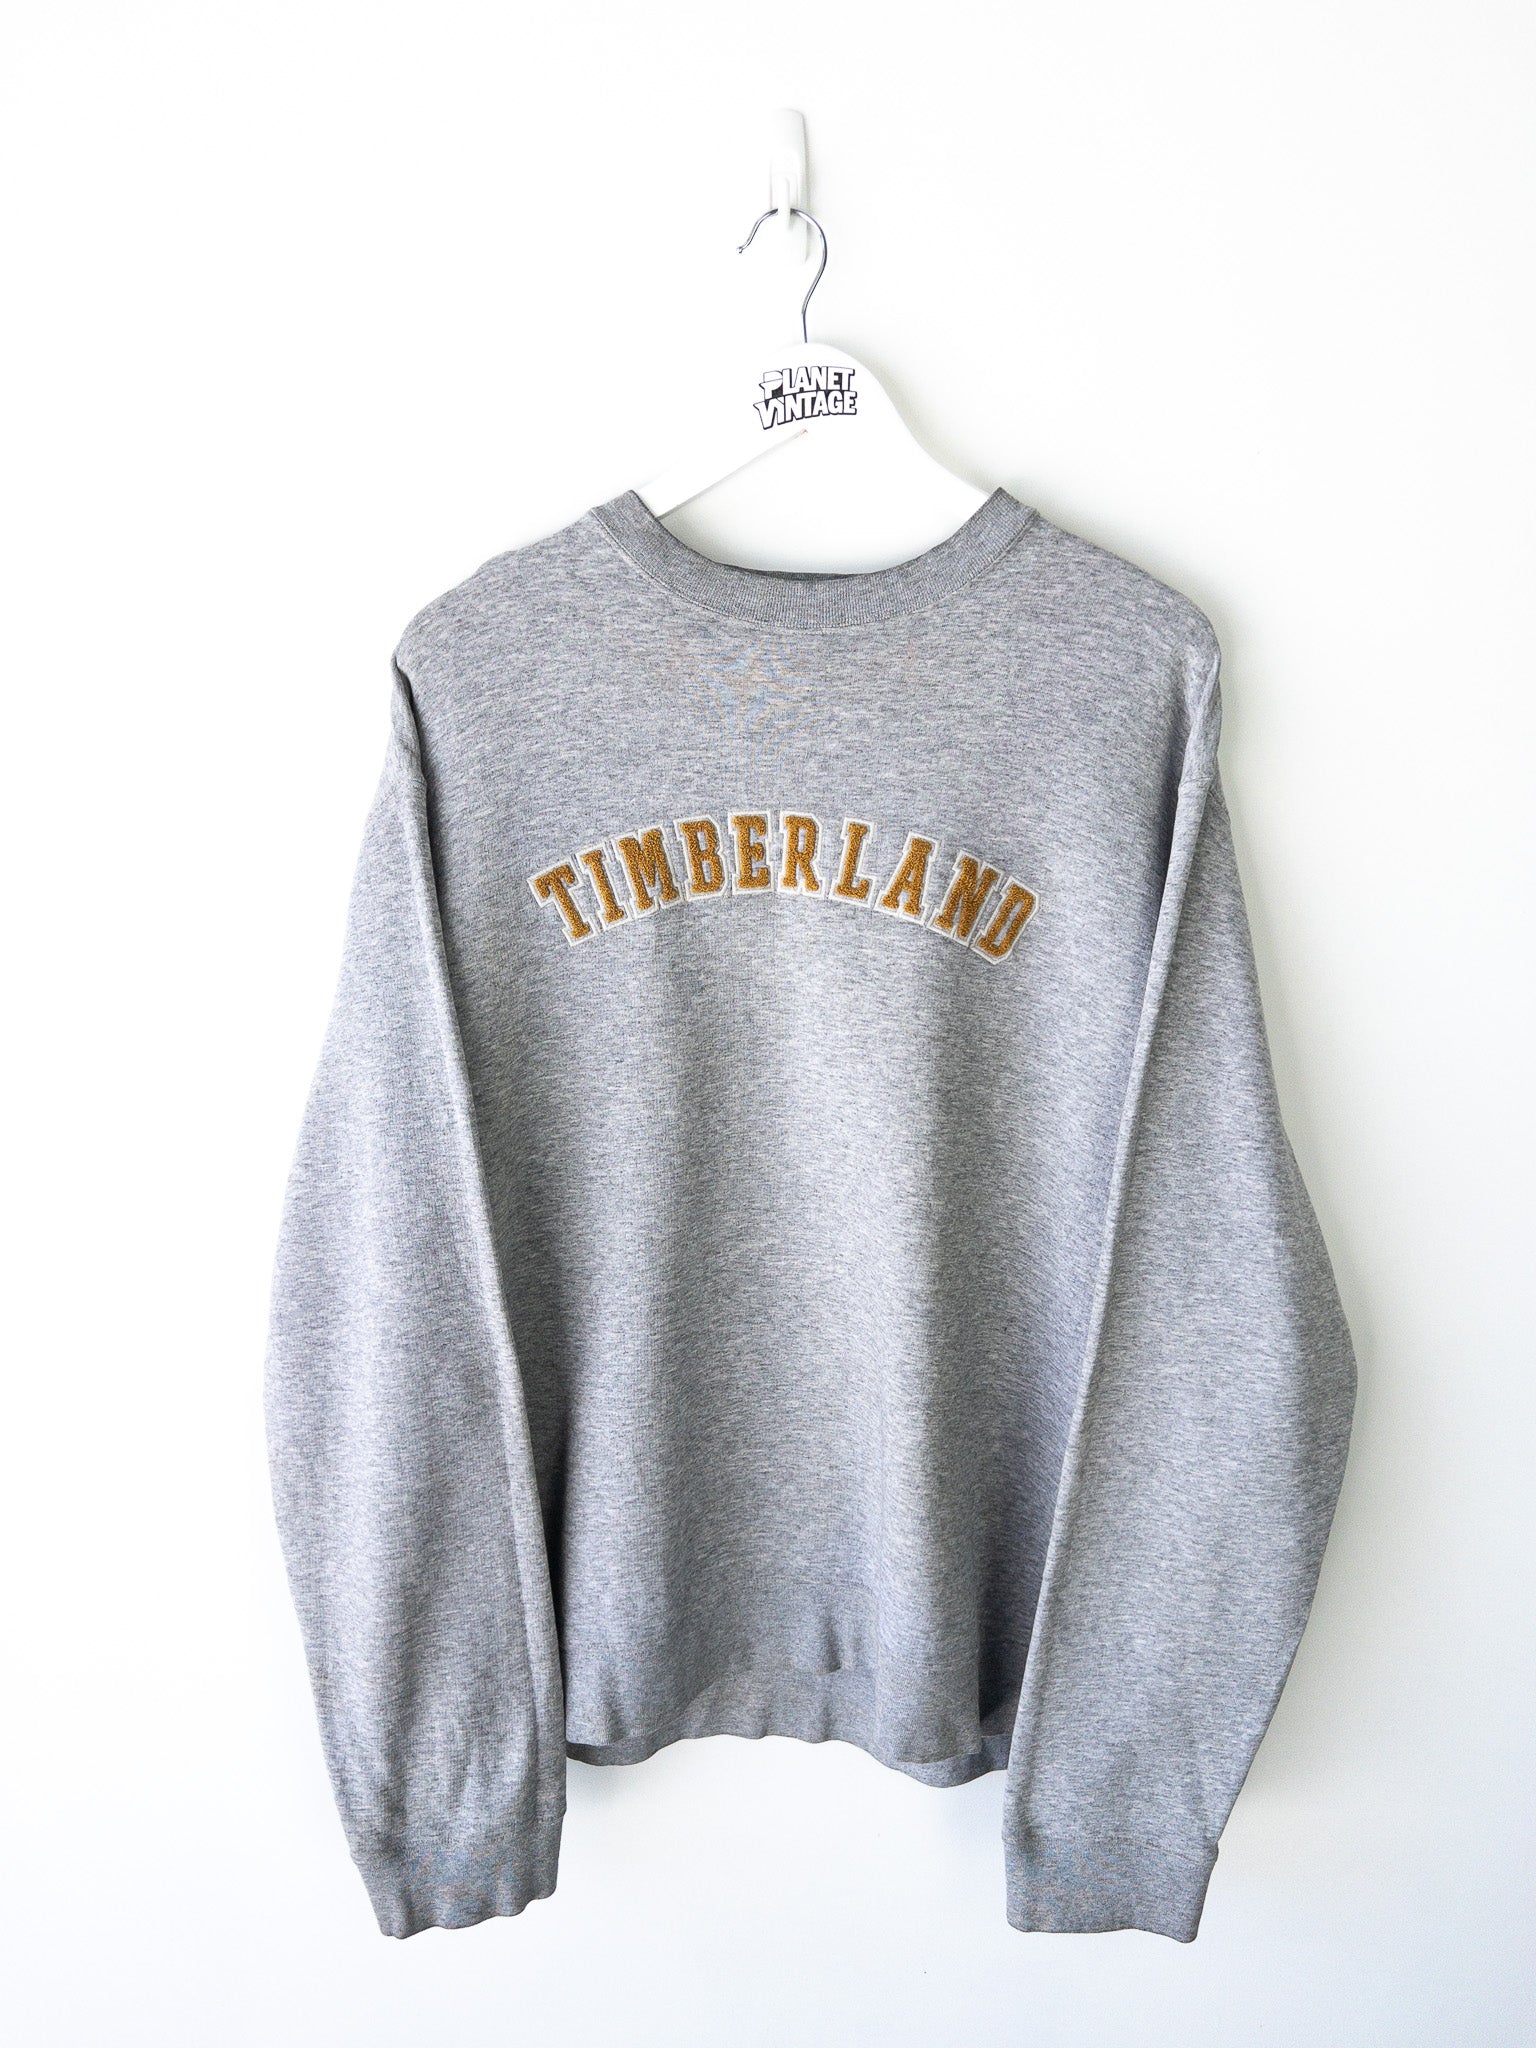 Vintage Timberland Sweatshirt (L)